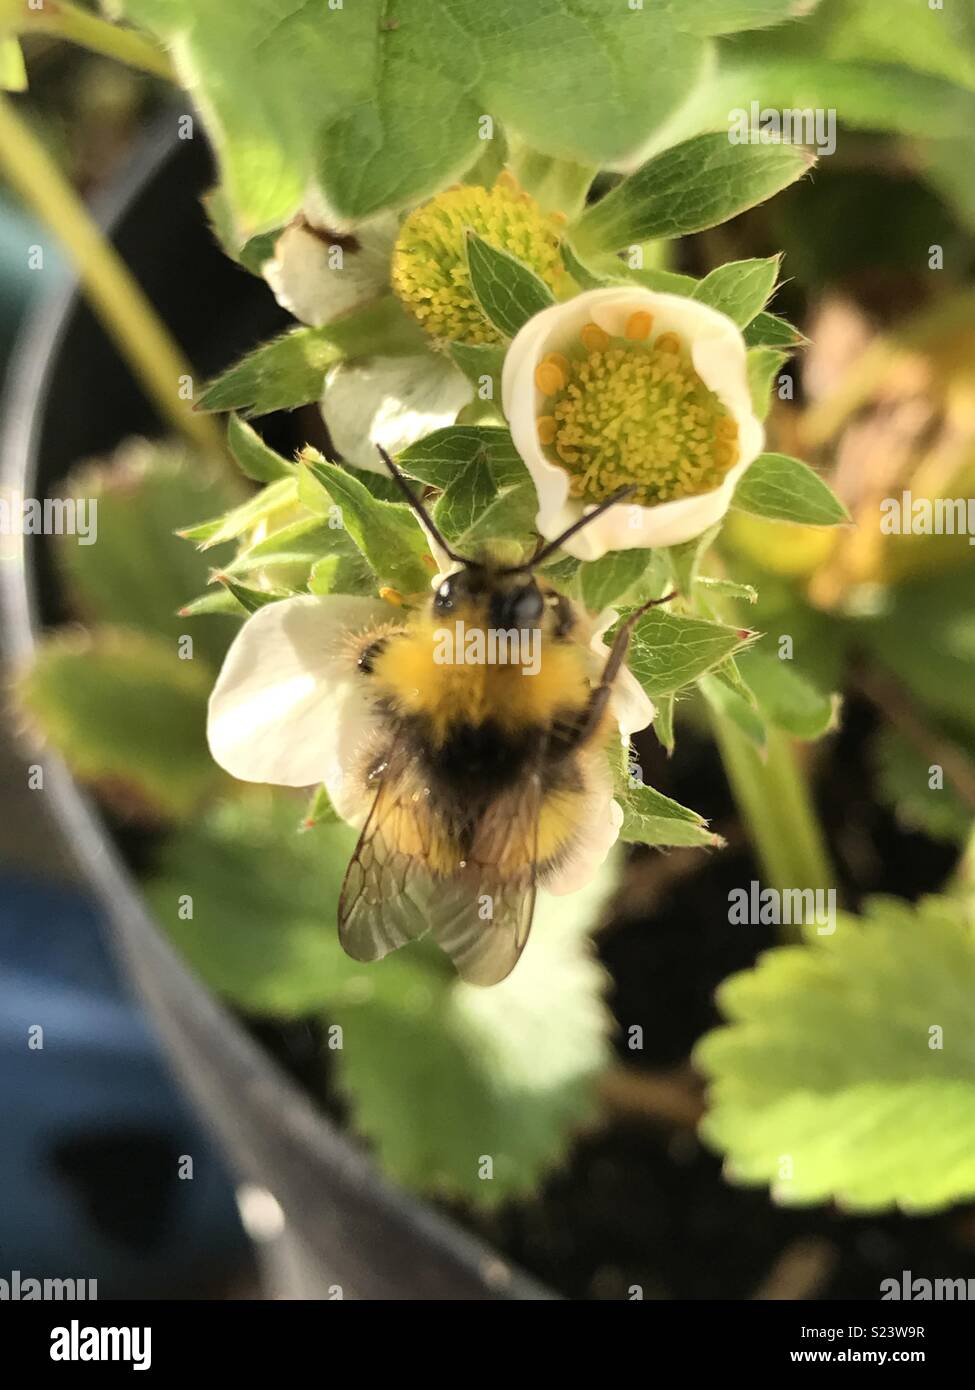 Bee on plant. Stock Photo